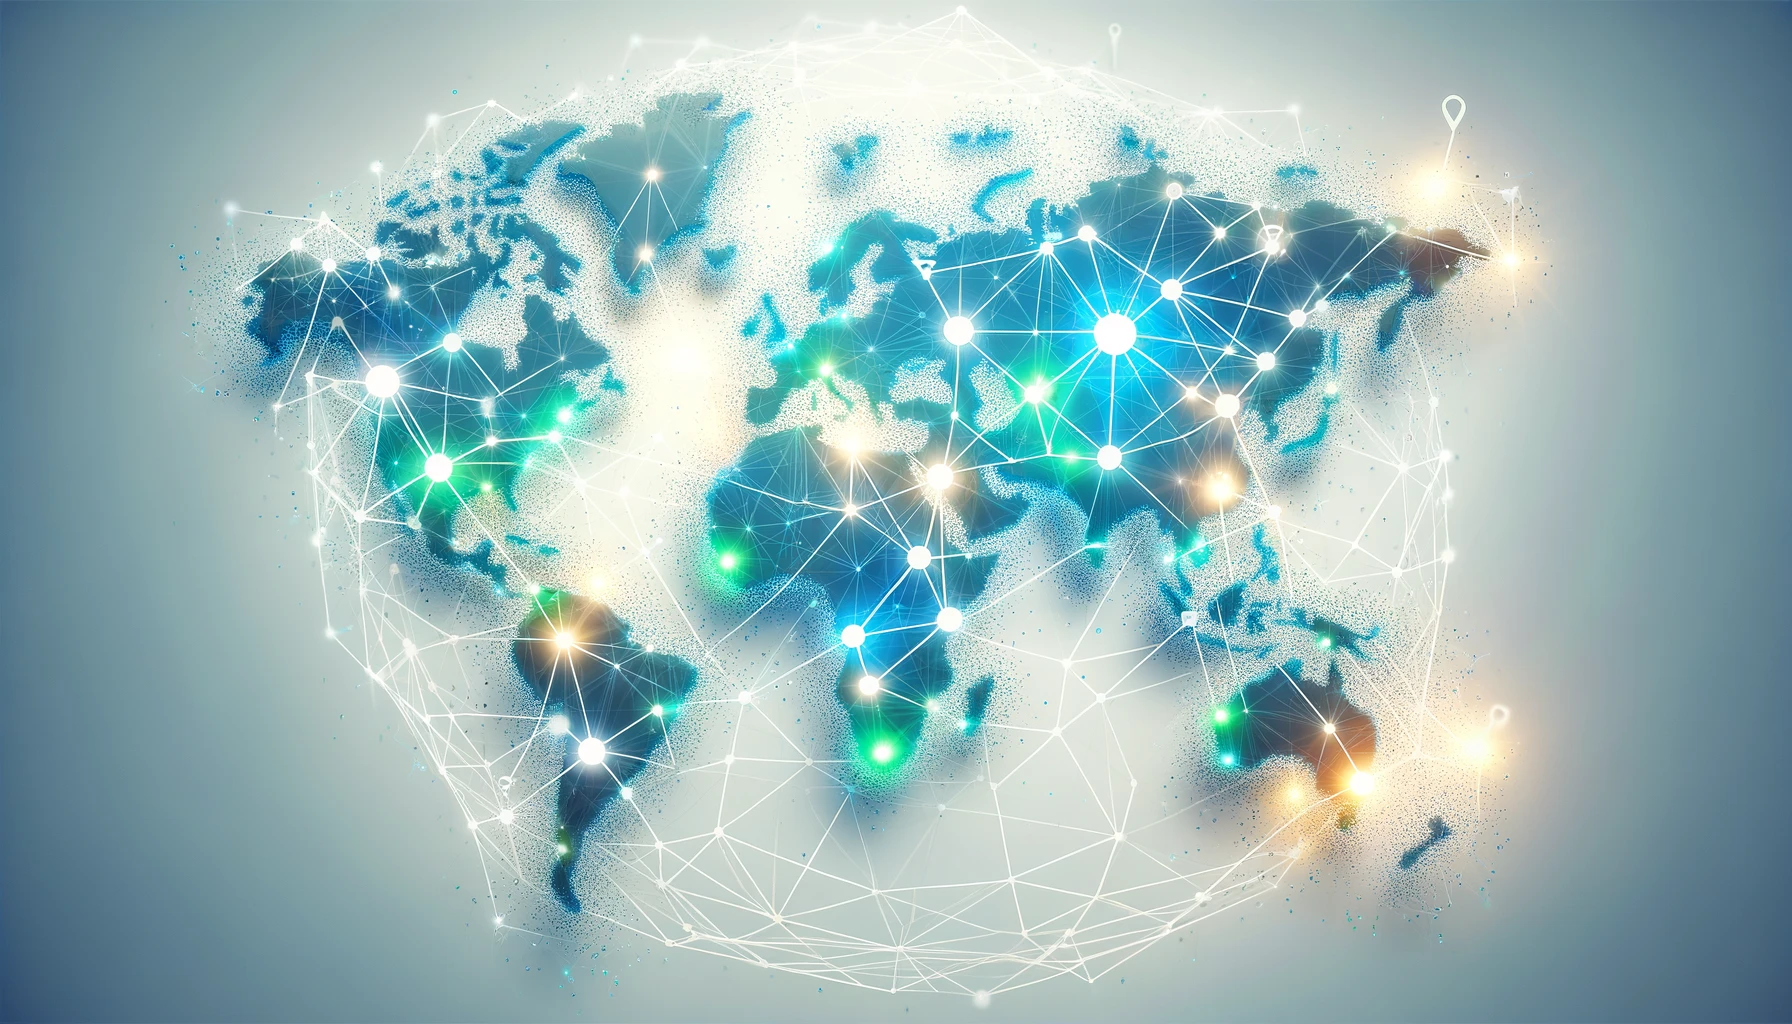 ブロックチェーン技術を象徴するデジタルワールドマップ